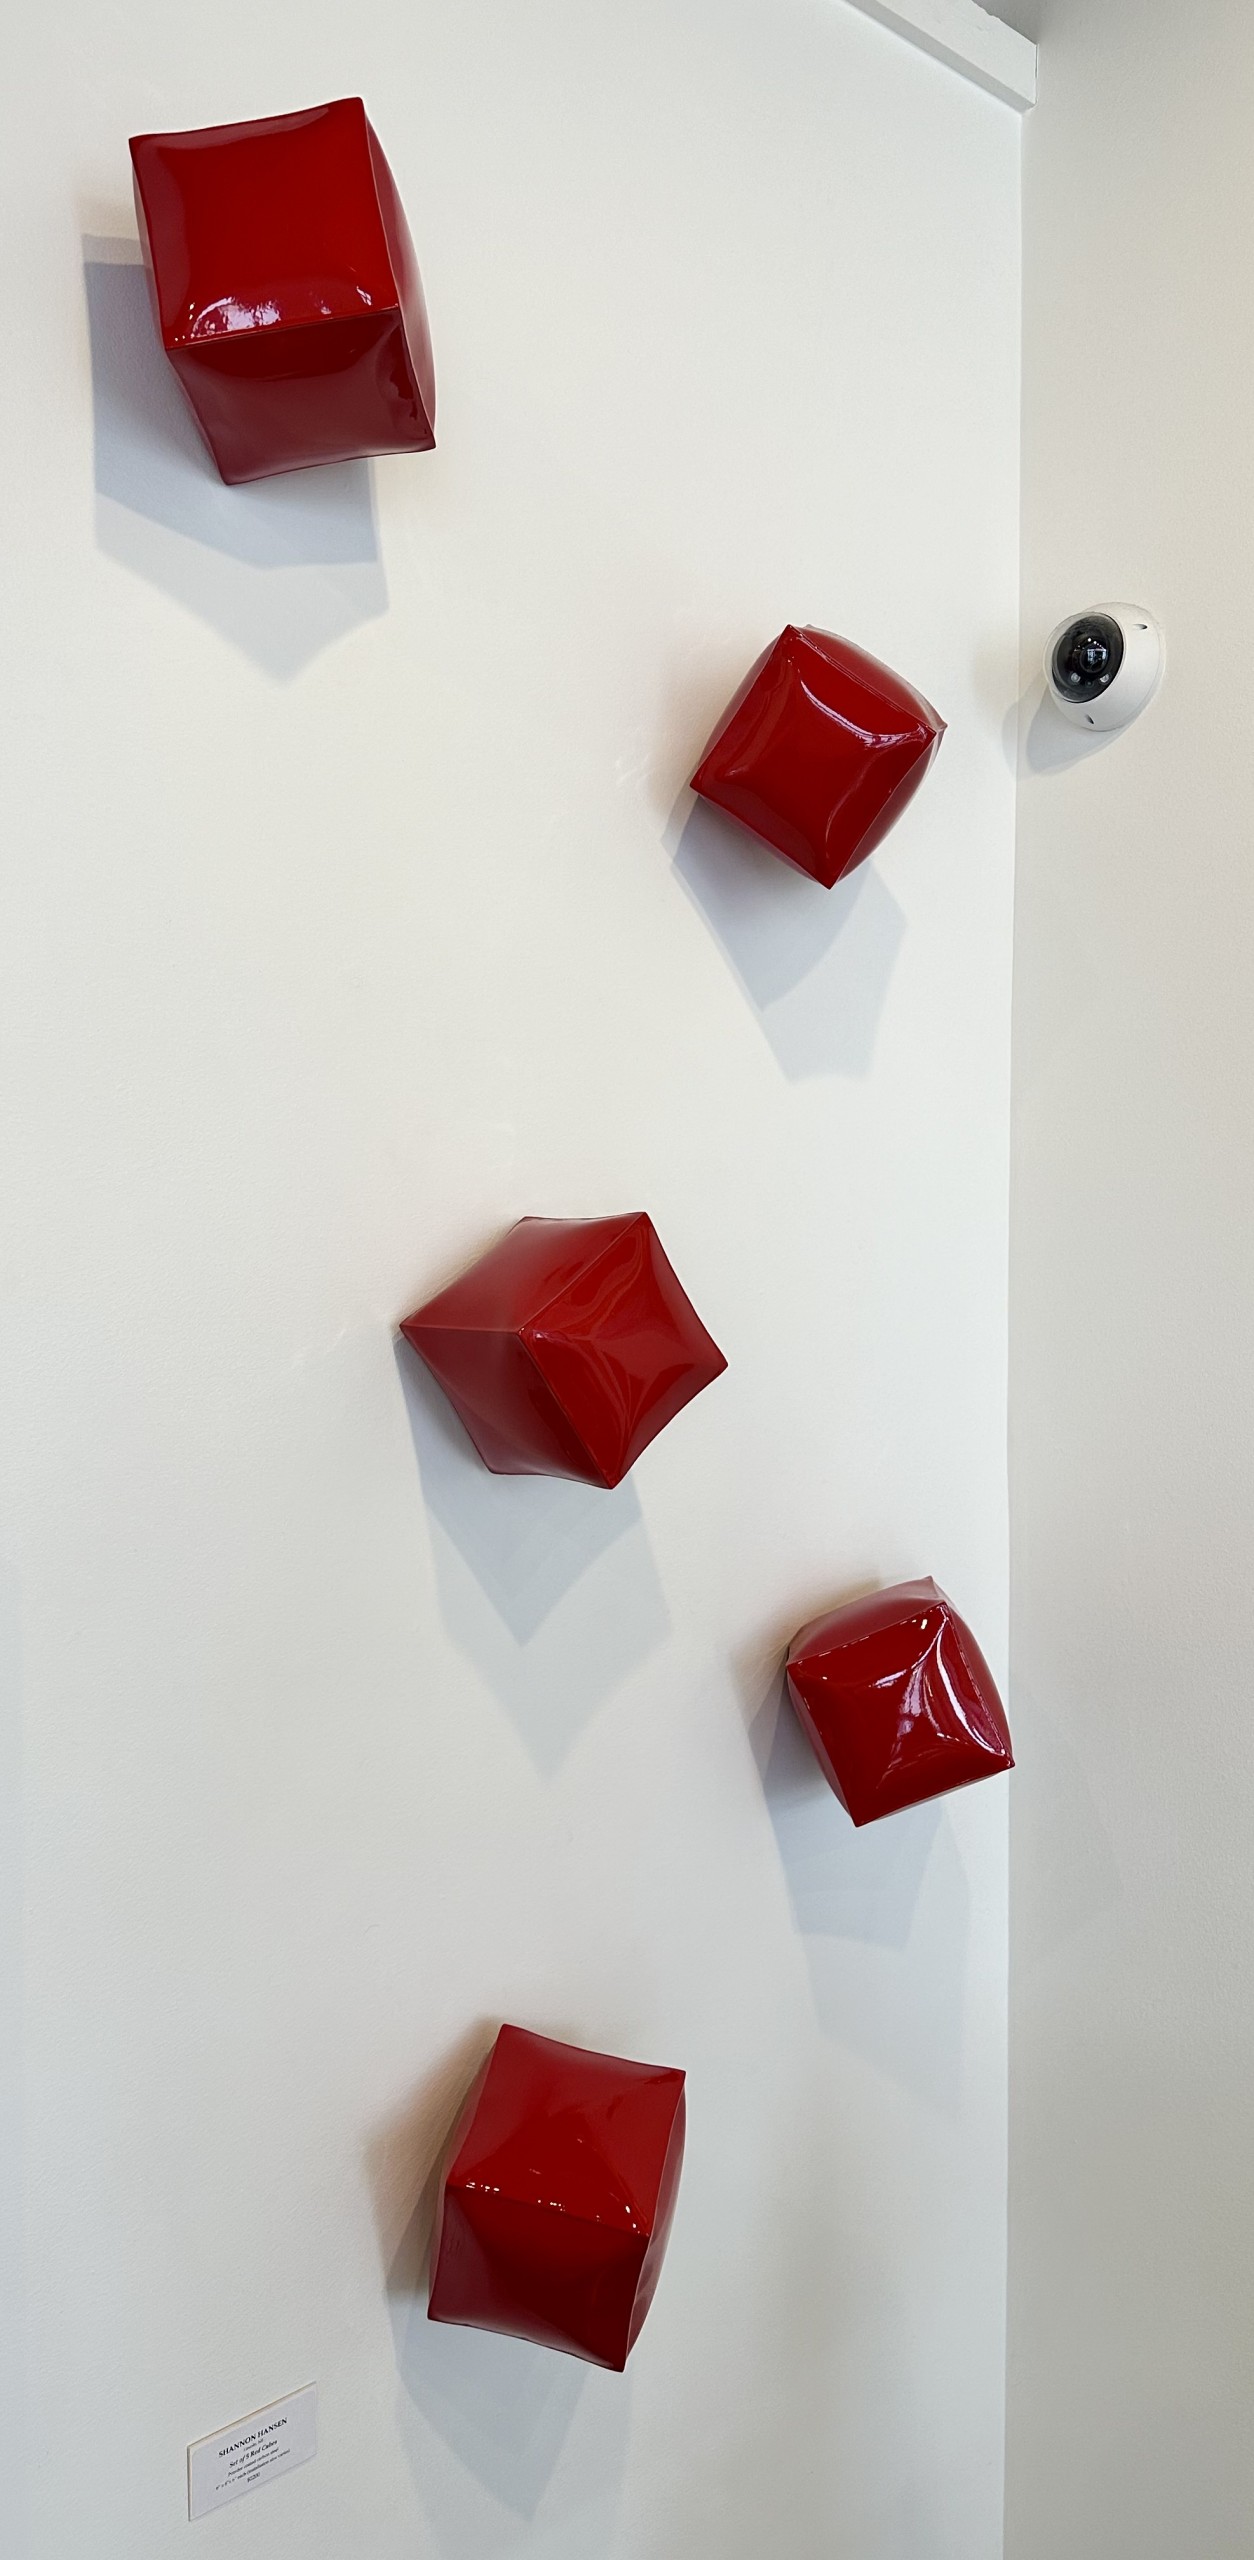 Shannon Hansen, “Set of 5 Red Cubes (Wall Sculptures)”, Metal sculpture